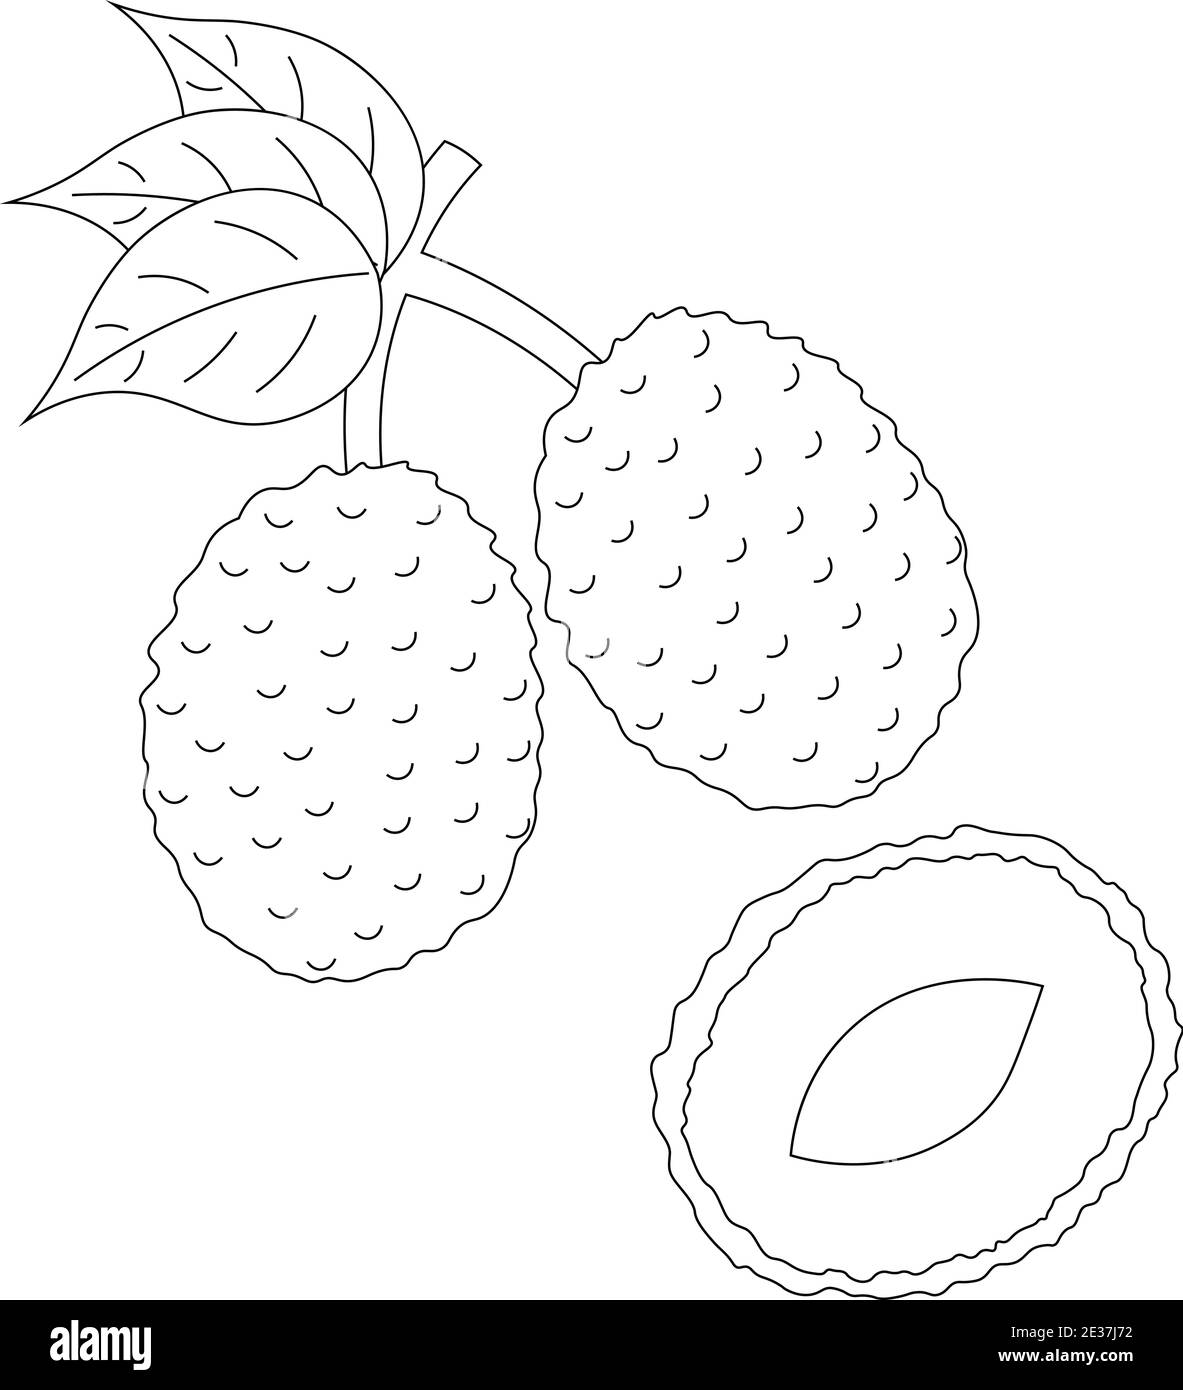 Litchi Fruit Sketch Vector Illustration Stock Vector - Illustration of  menu, sketch: 209862112